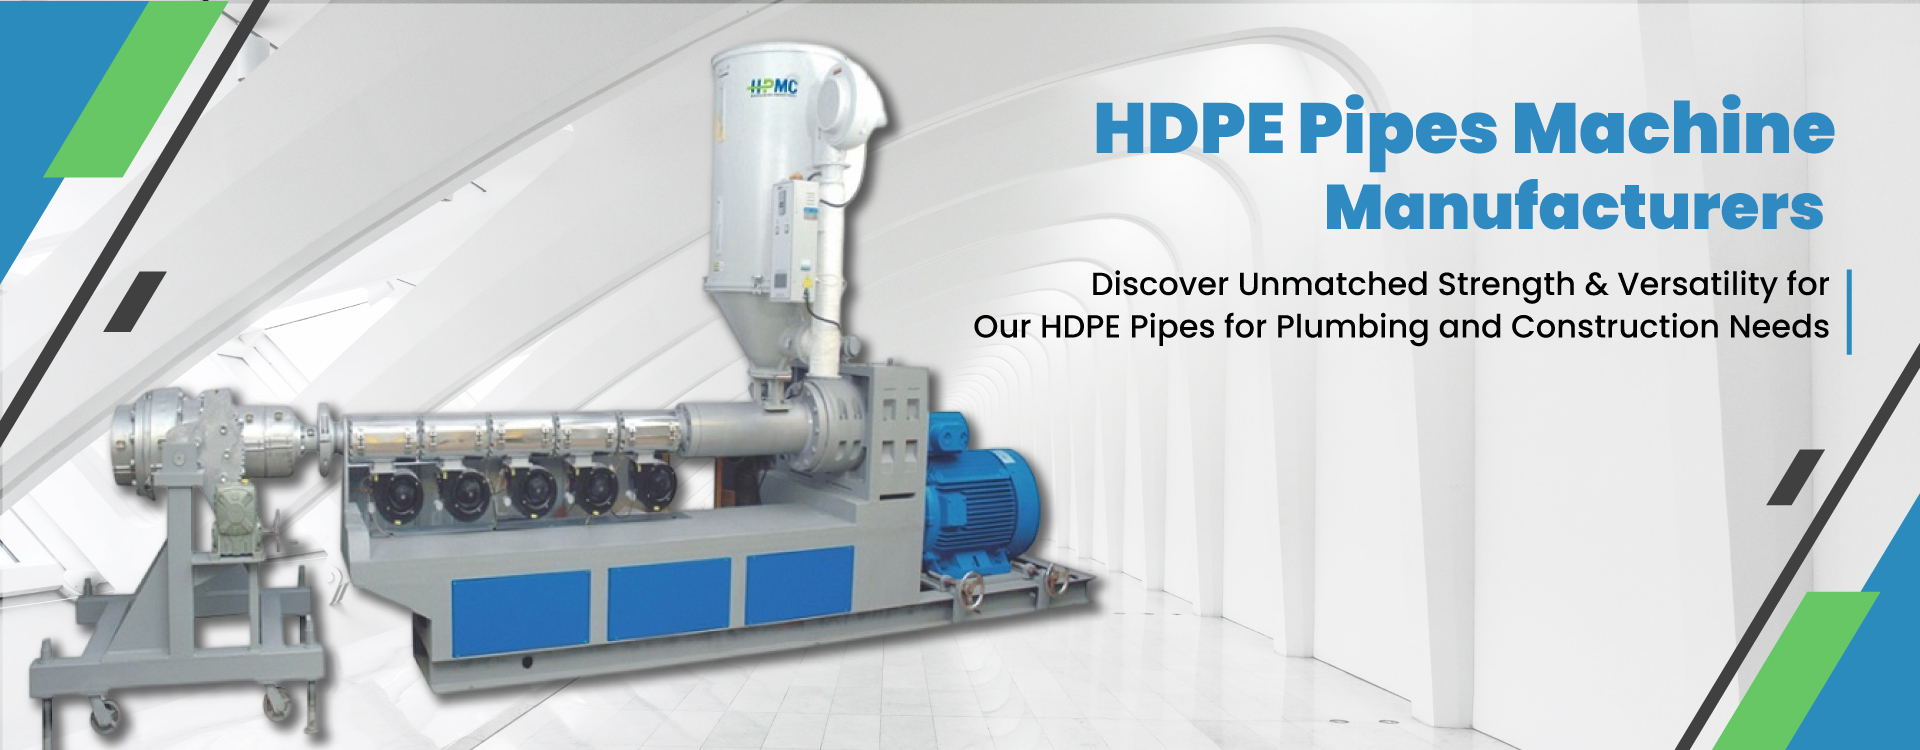 HDPE Pipes Machine Manufacturers in Delhi